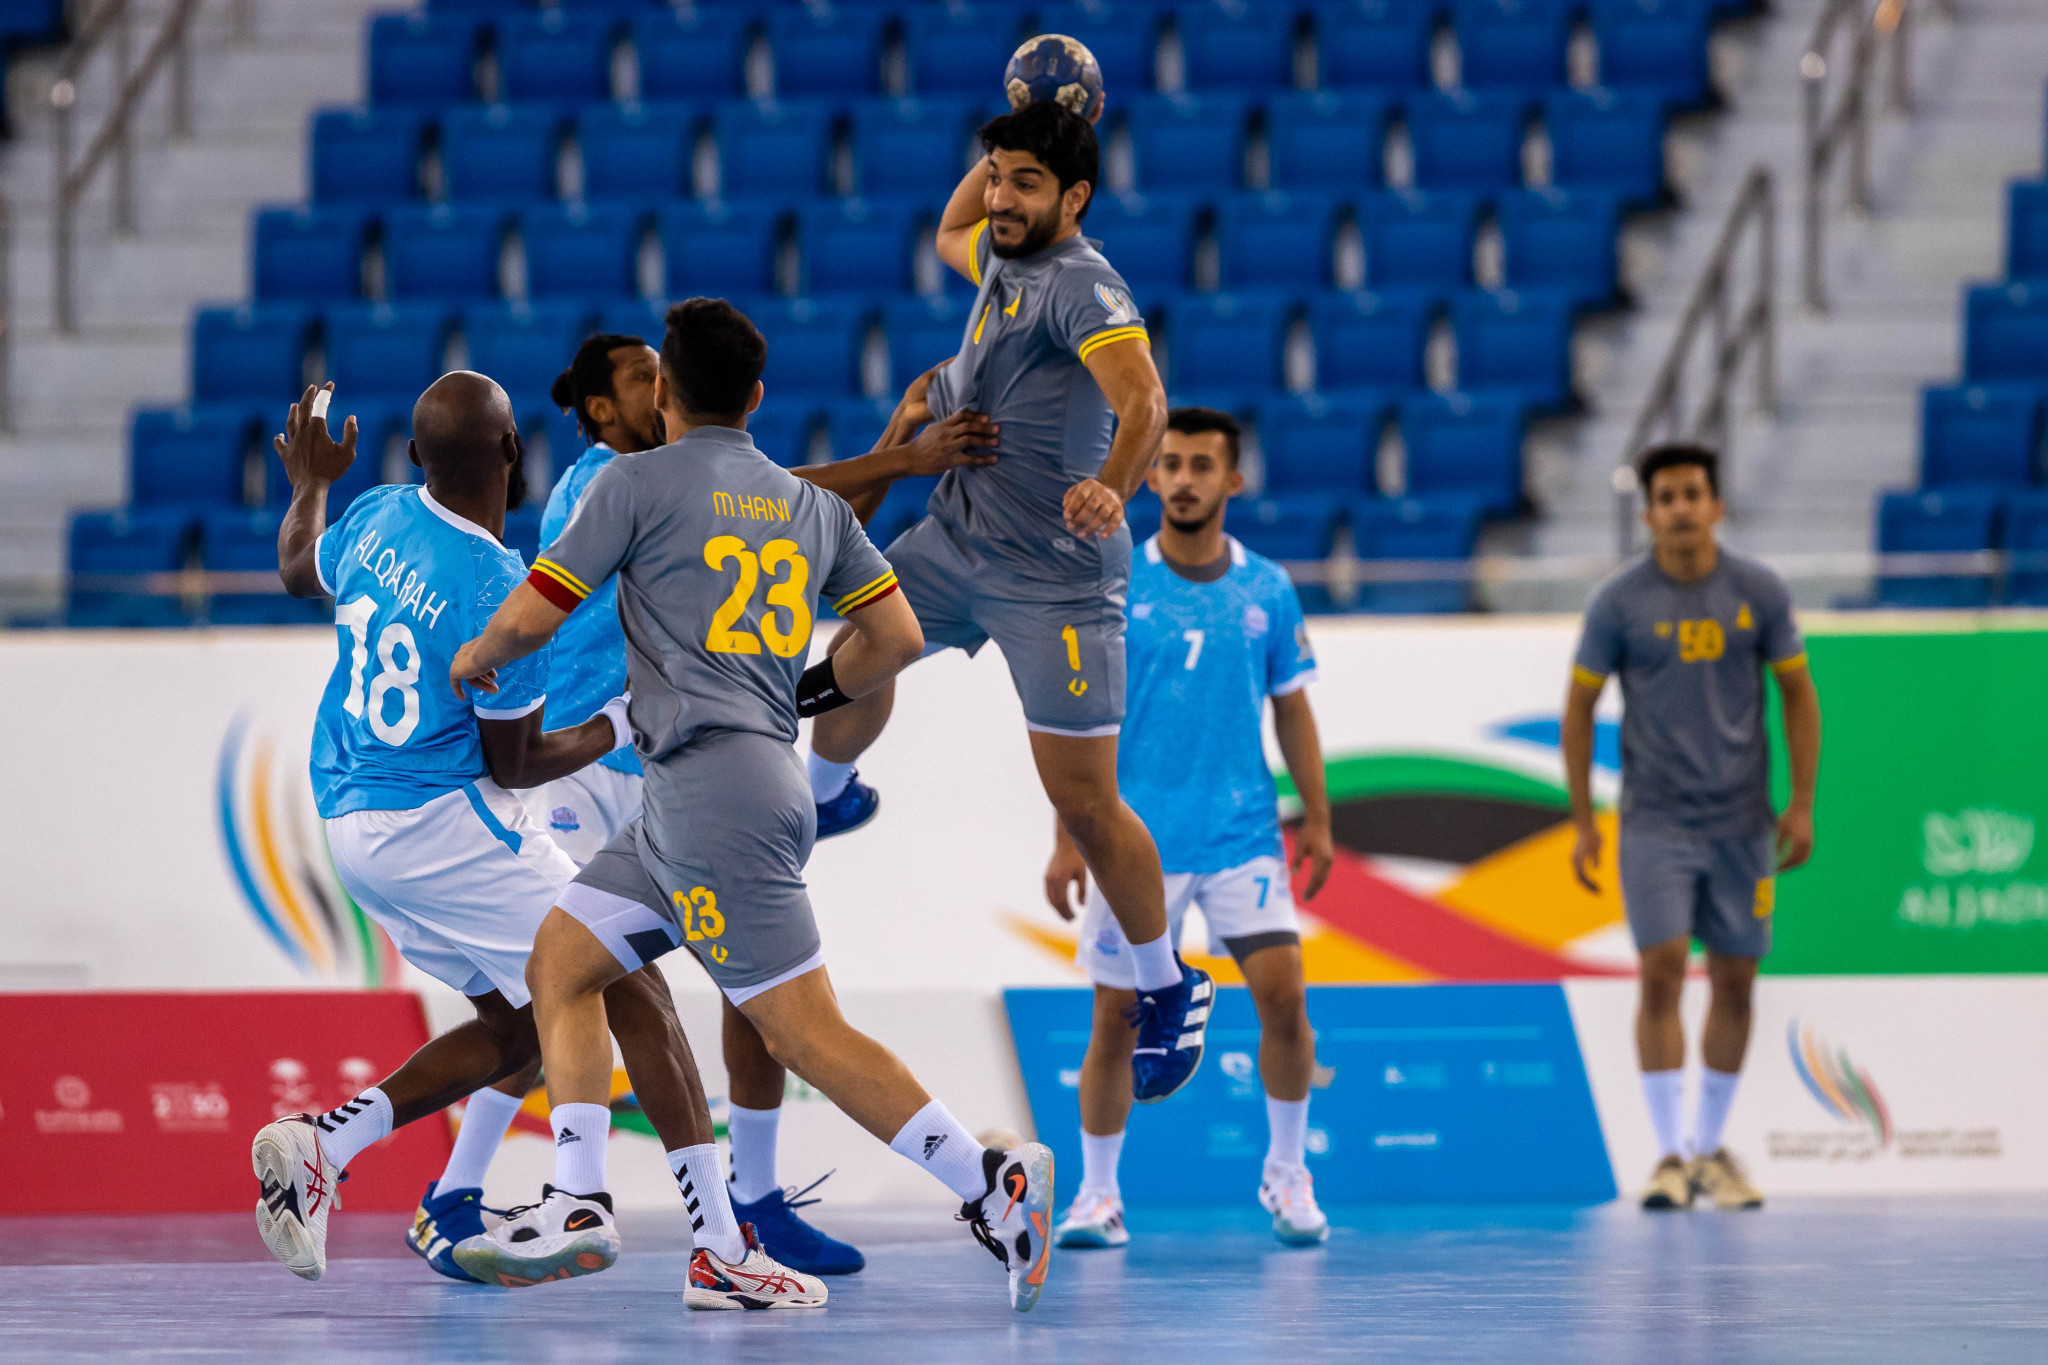 Men's handball teams locked horns for the last qualification spots ©Saudi Games